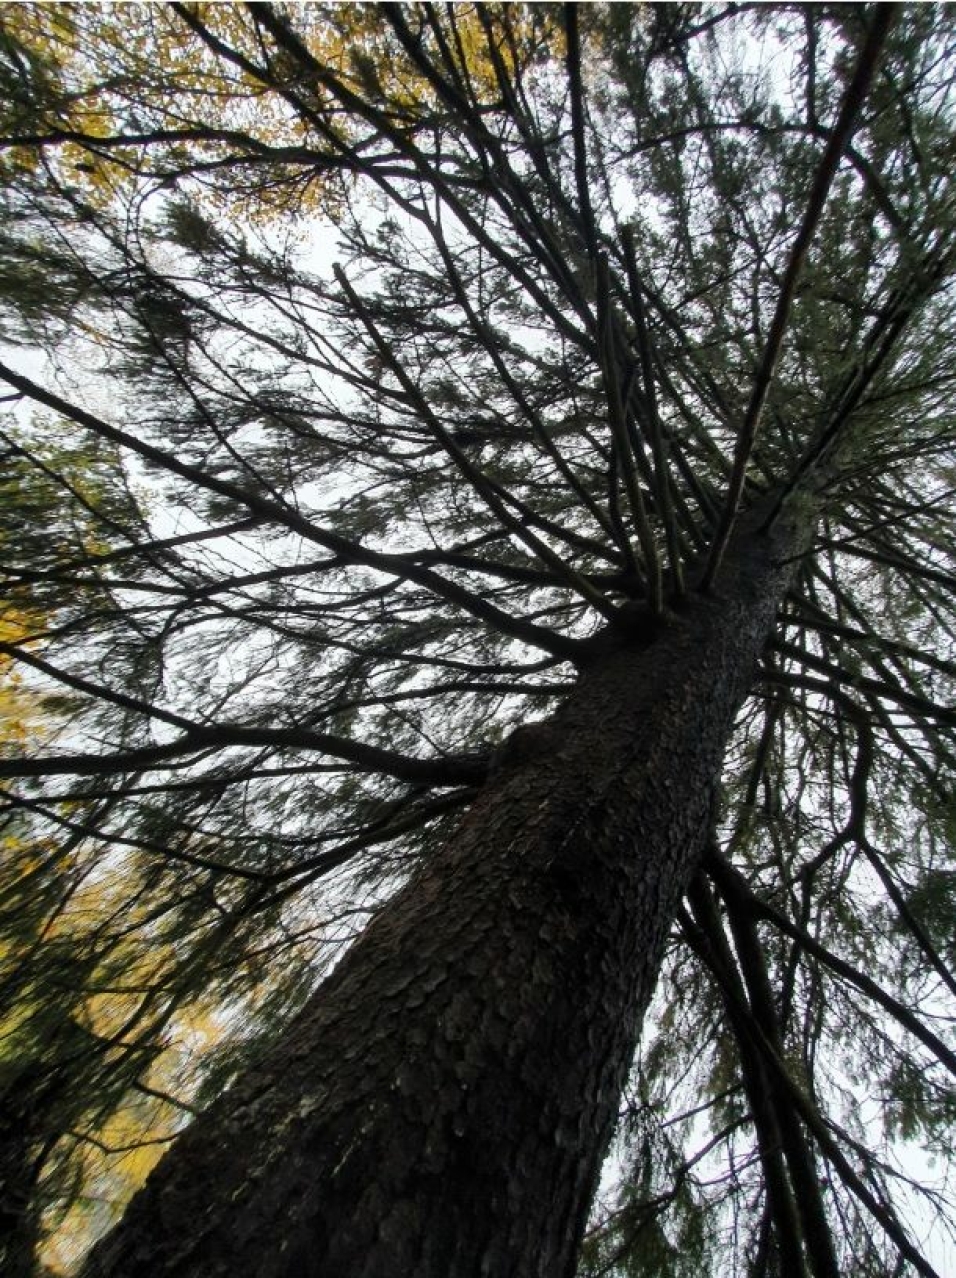 STORE TRÆR: – Trær akkumulerer biologisk mangfold med tiden. Store, gamle trær har en unik verdi nettopp i kraft av sin alder, sier Mariella Nora Isabella Filberg Memo fra Naturvernforbundet i Nordre Follo.